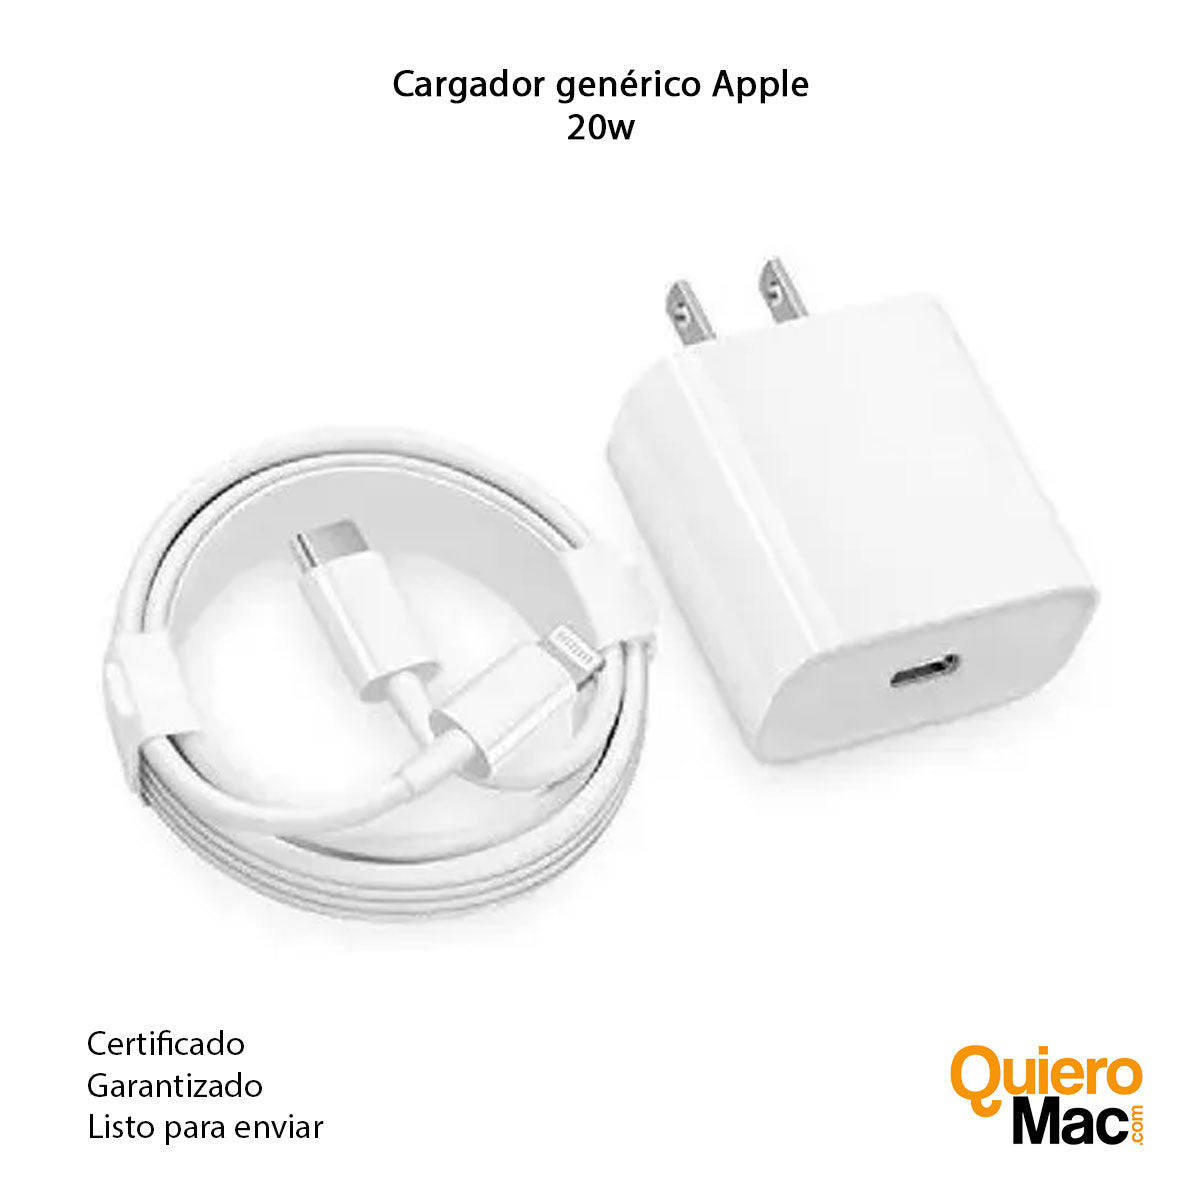 contar hasta Decaer matraz Cargador Apple Original para iPhone iPad Desde Bogotá a Colombia –  QuieroMac.com